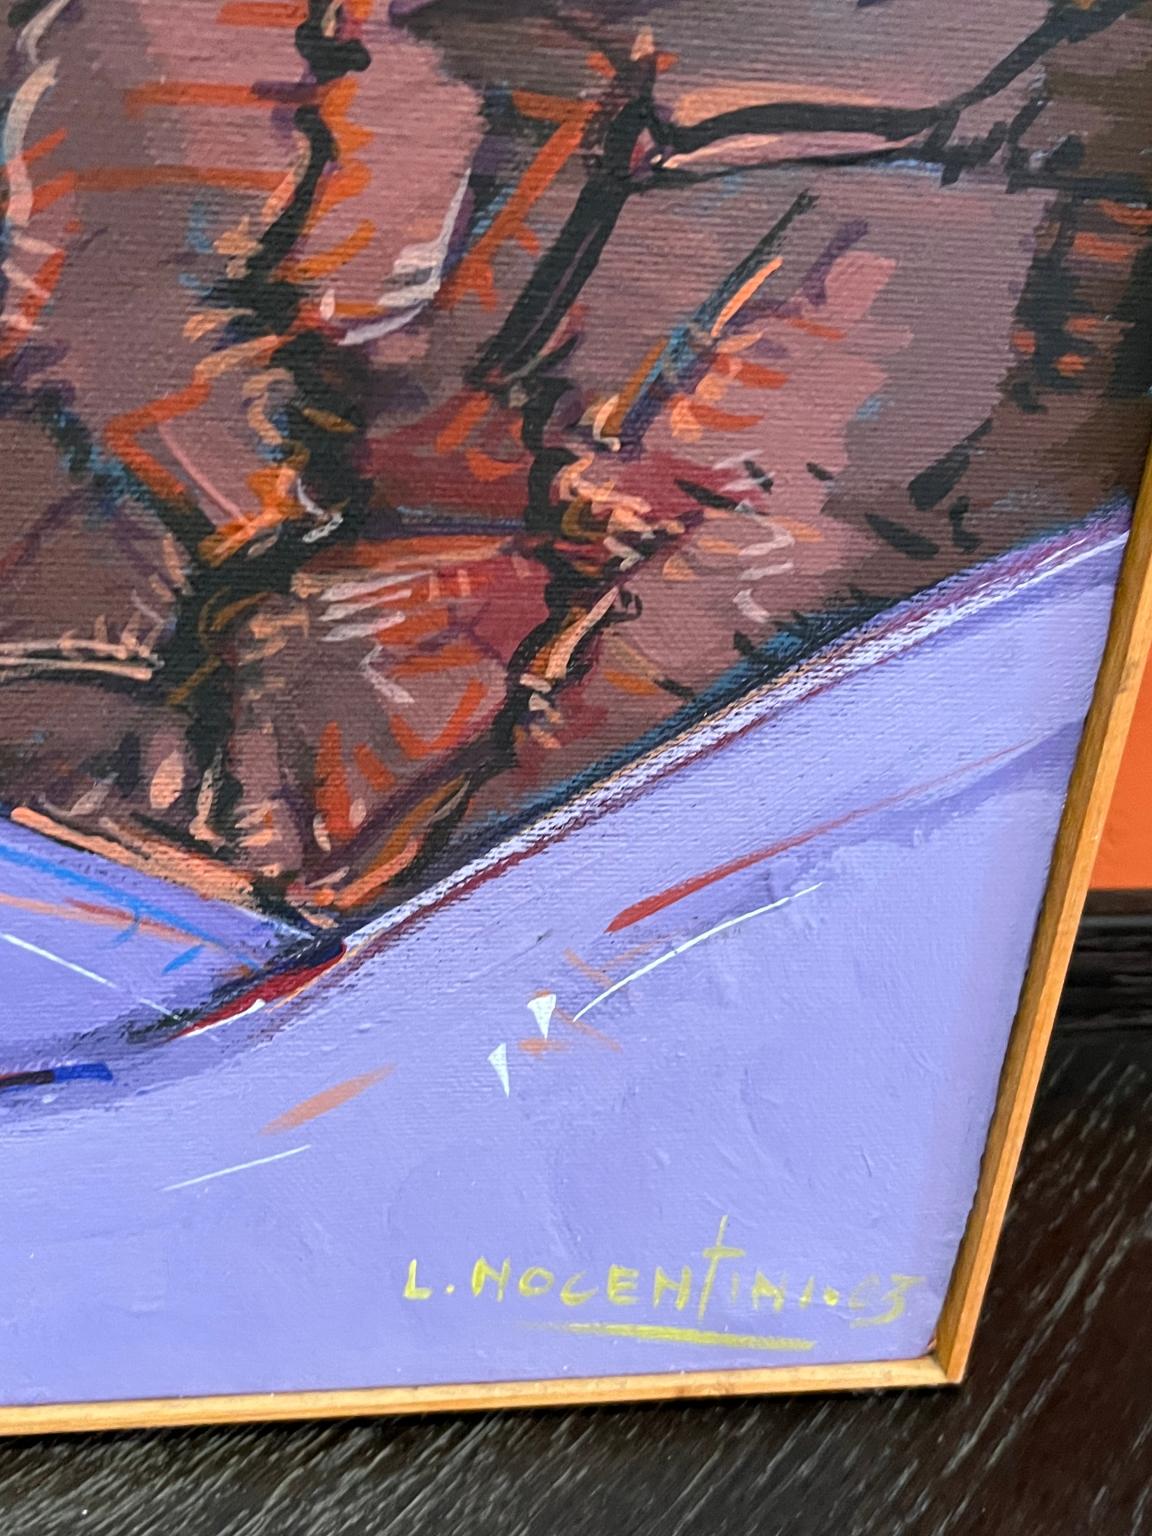 Das Gemälde ist signiert und datiert: L. NOCENTINI 03.
Der Stil von Ladislao Nocentini kann als eine Art figurativer Expressionismus definiert werden: seine Werke basieren in der Tat auf einer soliden und sicheren Zeichnung, in der die strukturelle